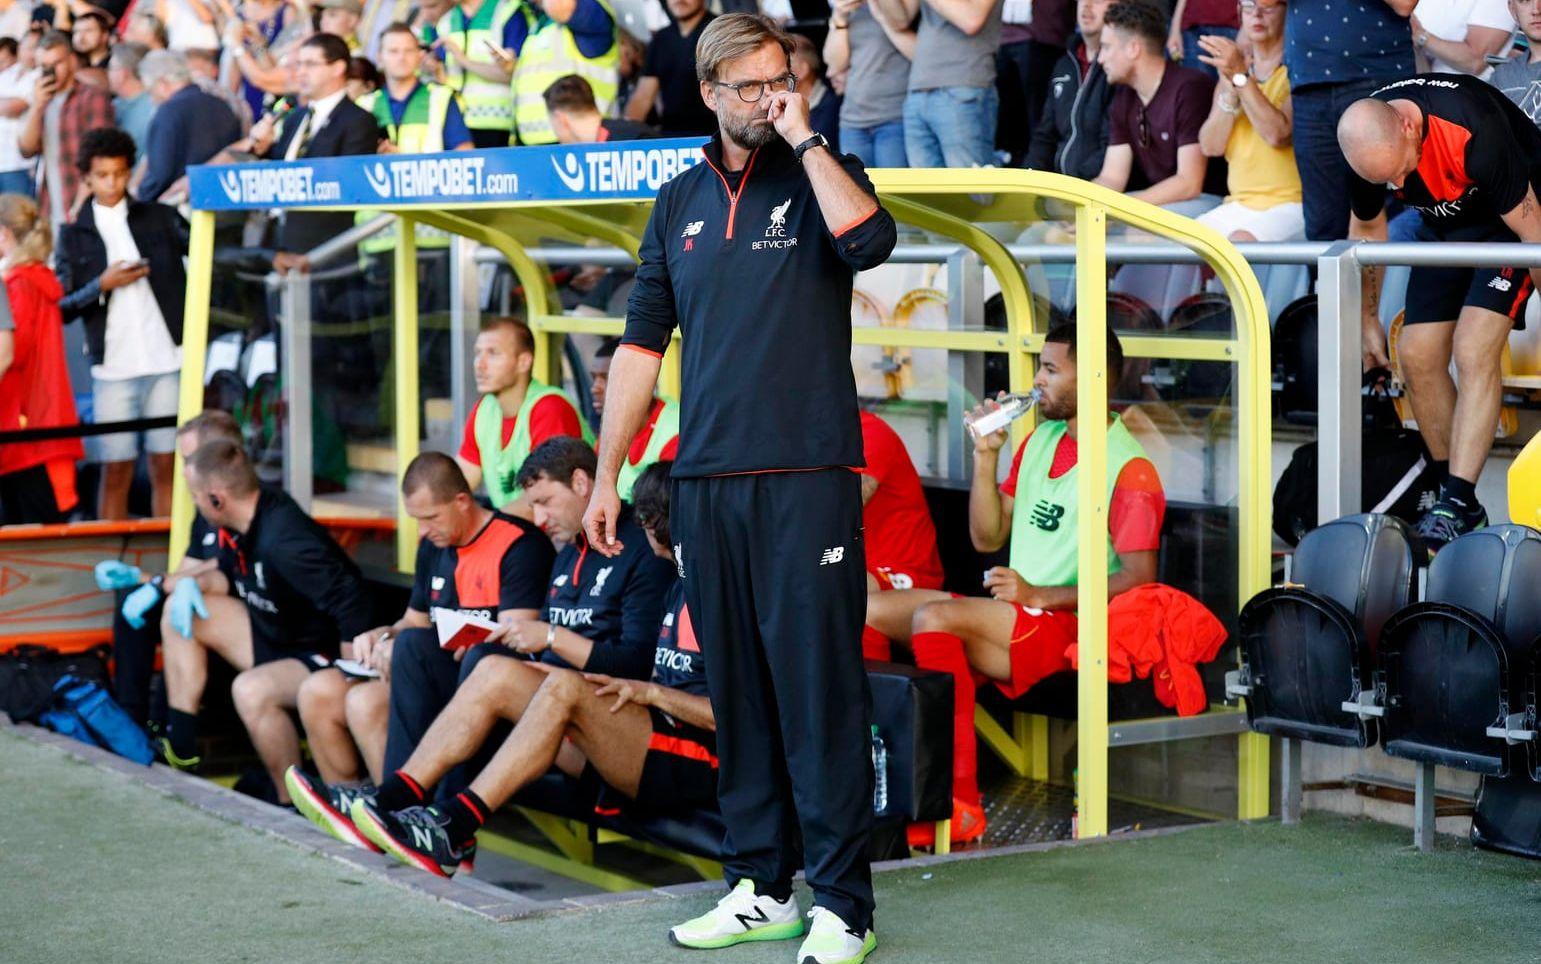 Den karismatiske tysken Jürgen Klopp får 77,7 miljoner kronor per år av Liverpool. Bild: Bildbyrån